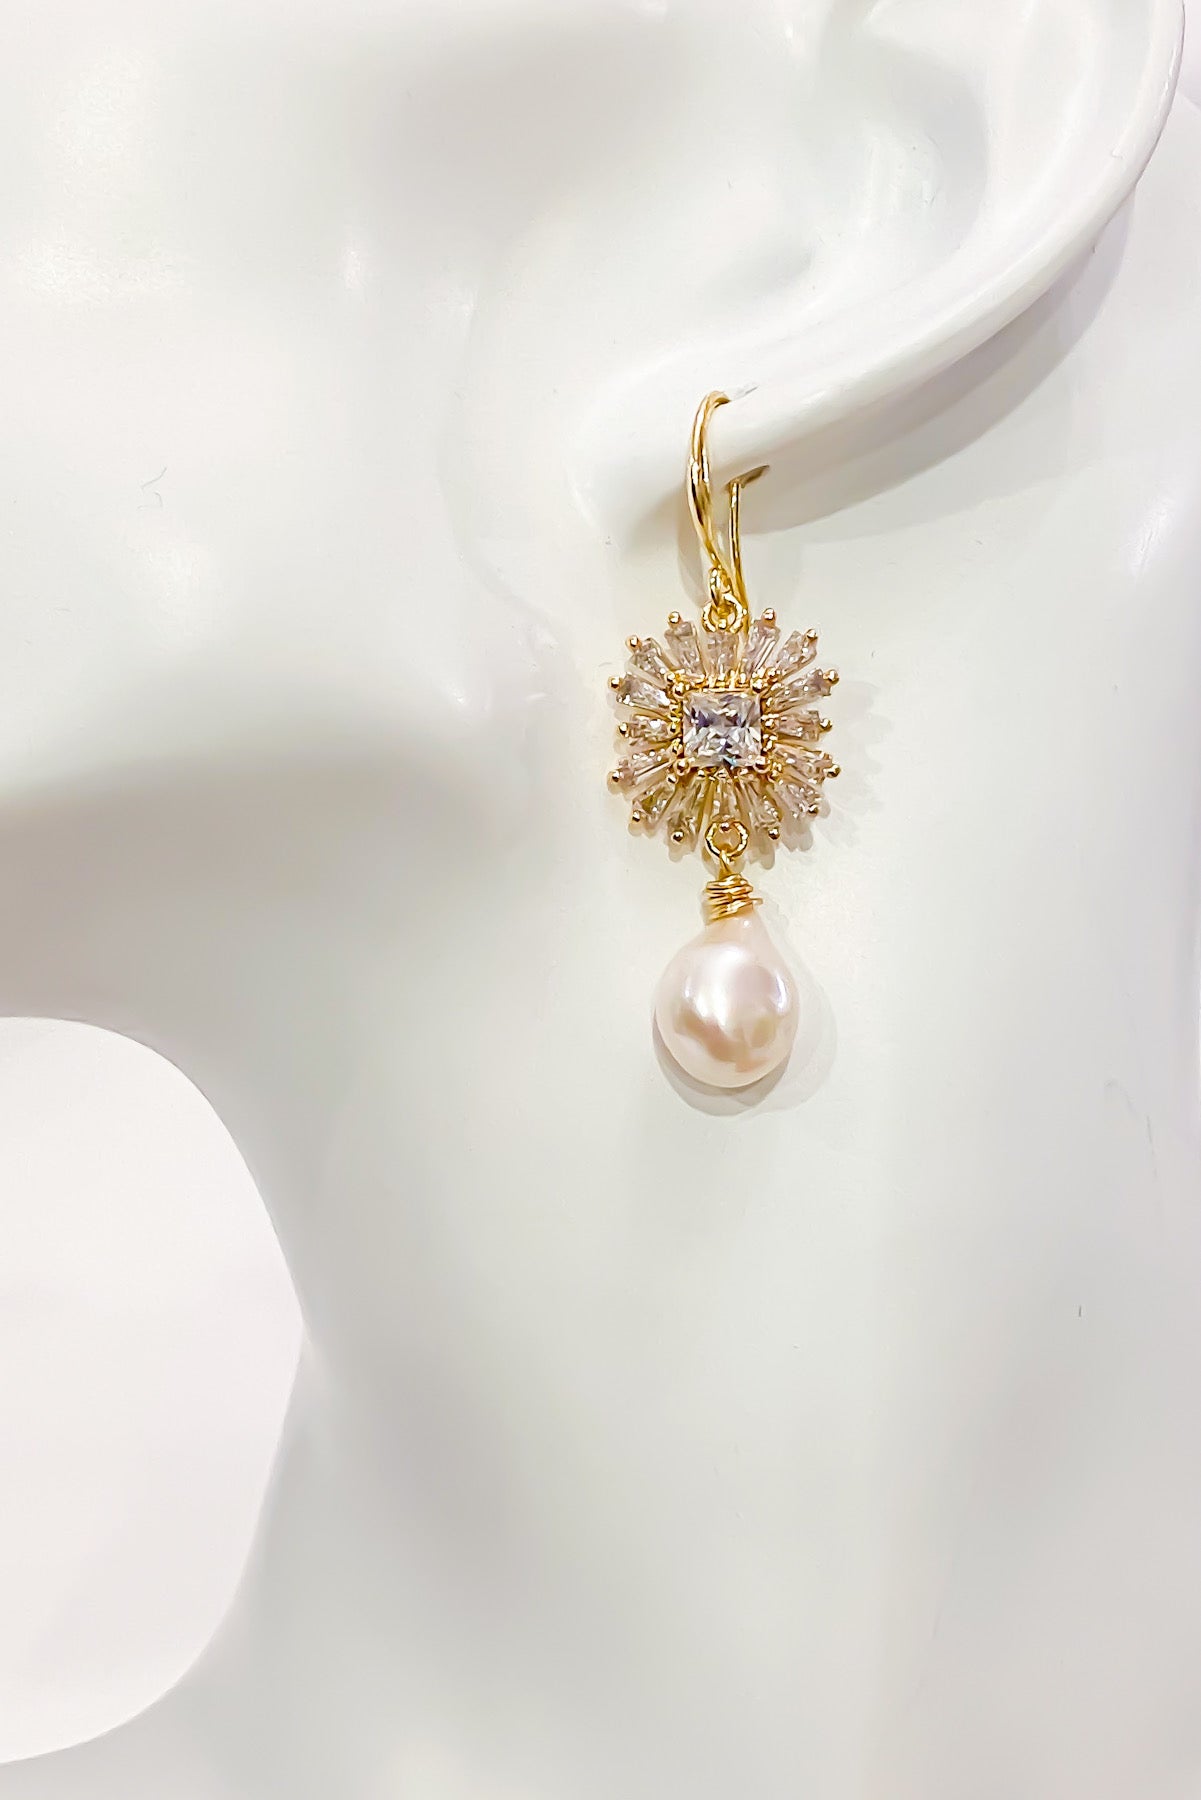 SKYE San Francisco Shop SF Chic Modern Elegant Classy Women Jewelry French Parisian Minimalist Alizee 18K Gold Pearl Earrings 4